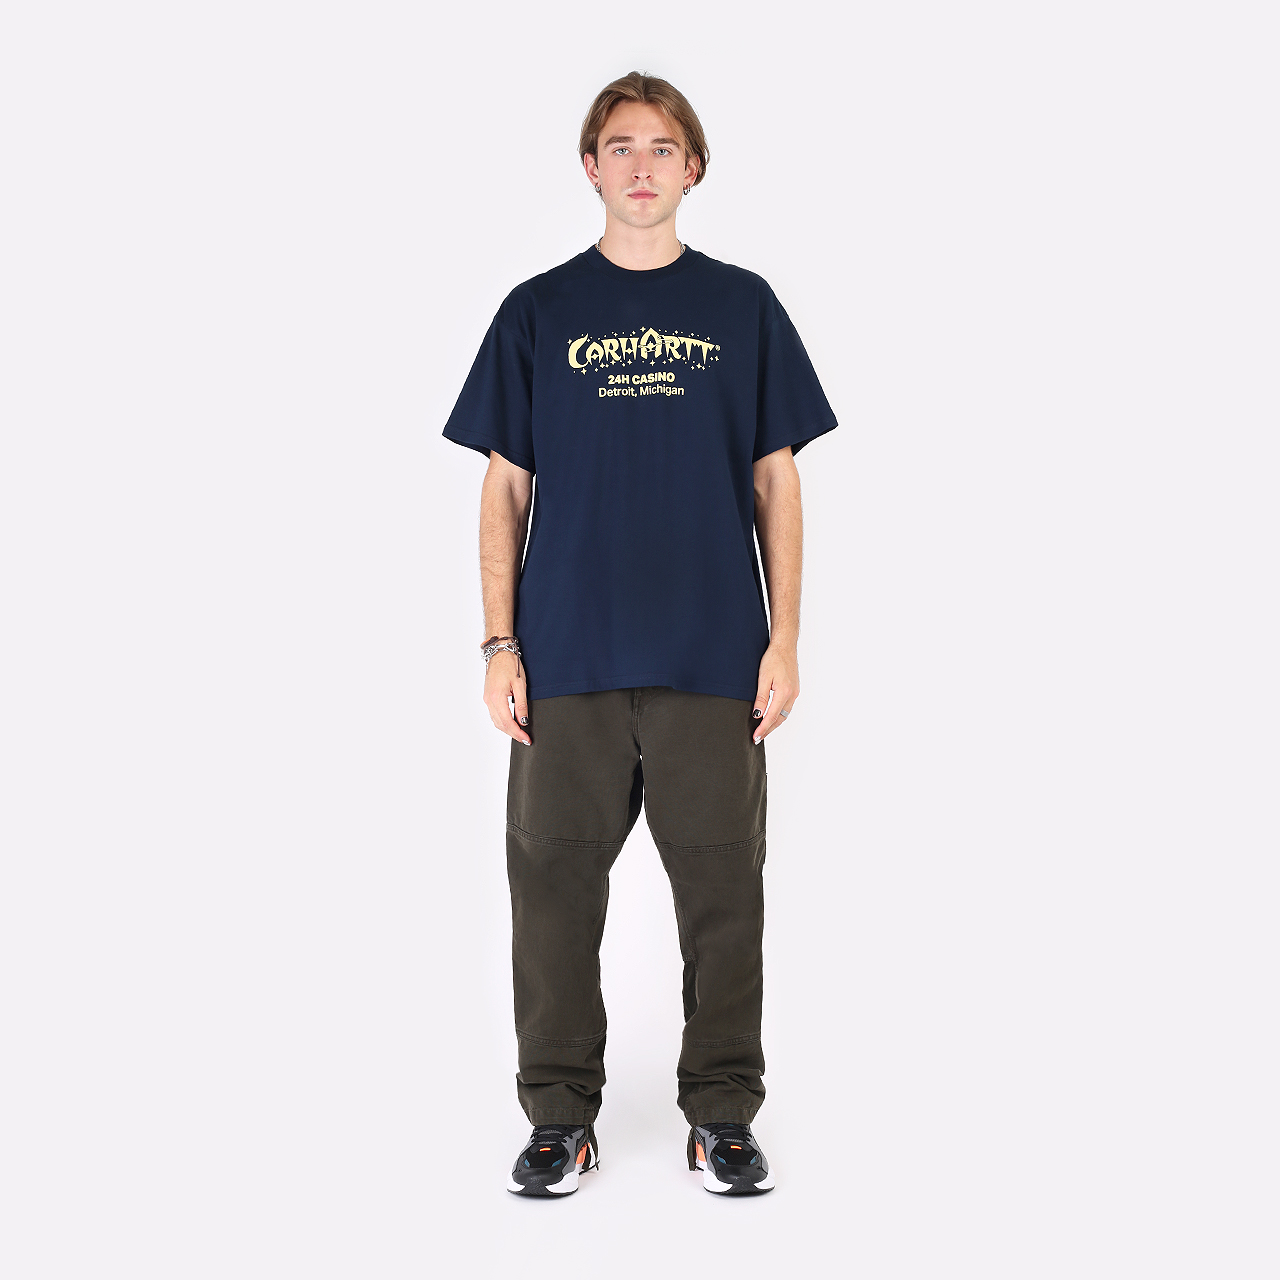 мужская синяя футболка Carhartt WIP S/S Casino T-Shirt I030171-mizar/soft yellow - цена, описание, фото 3